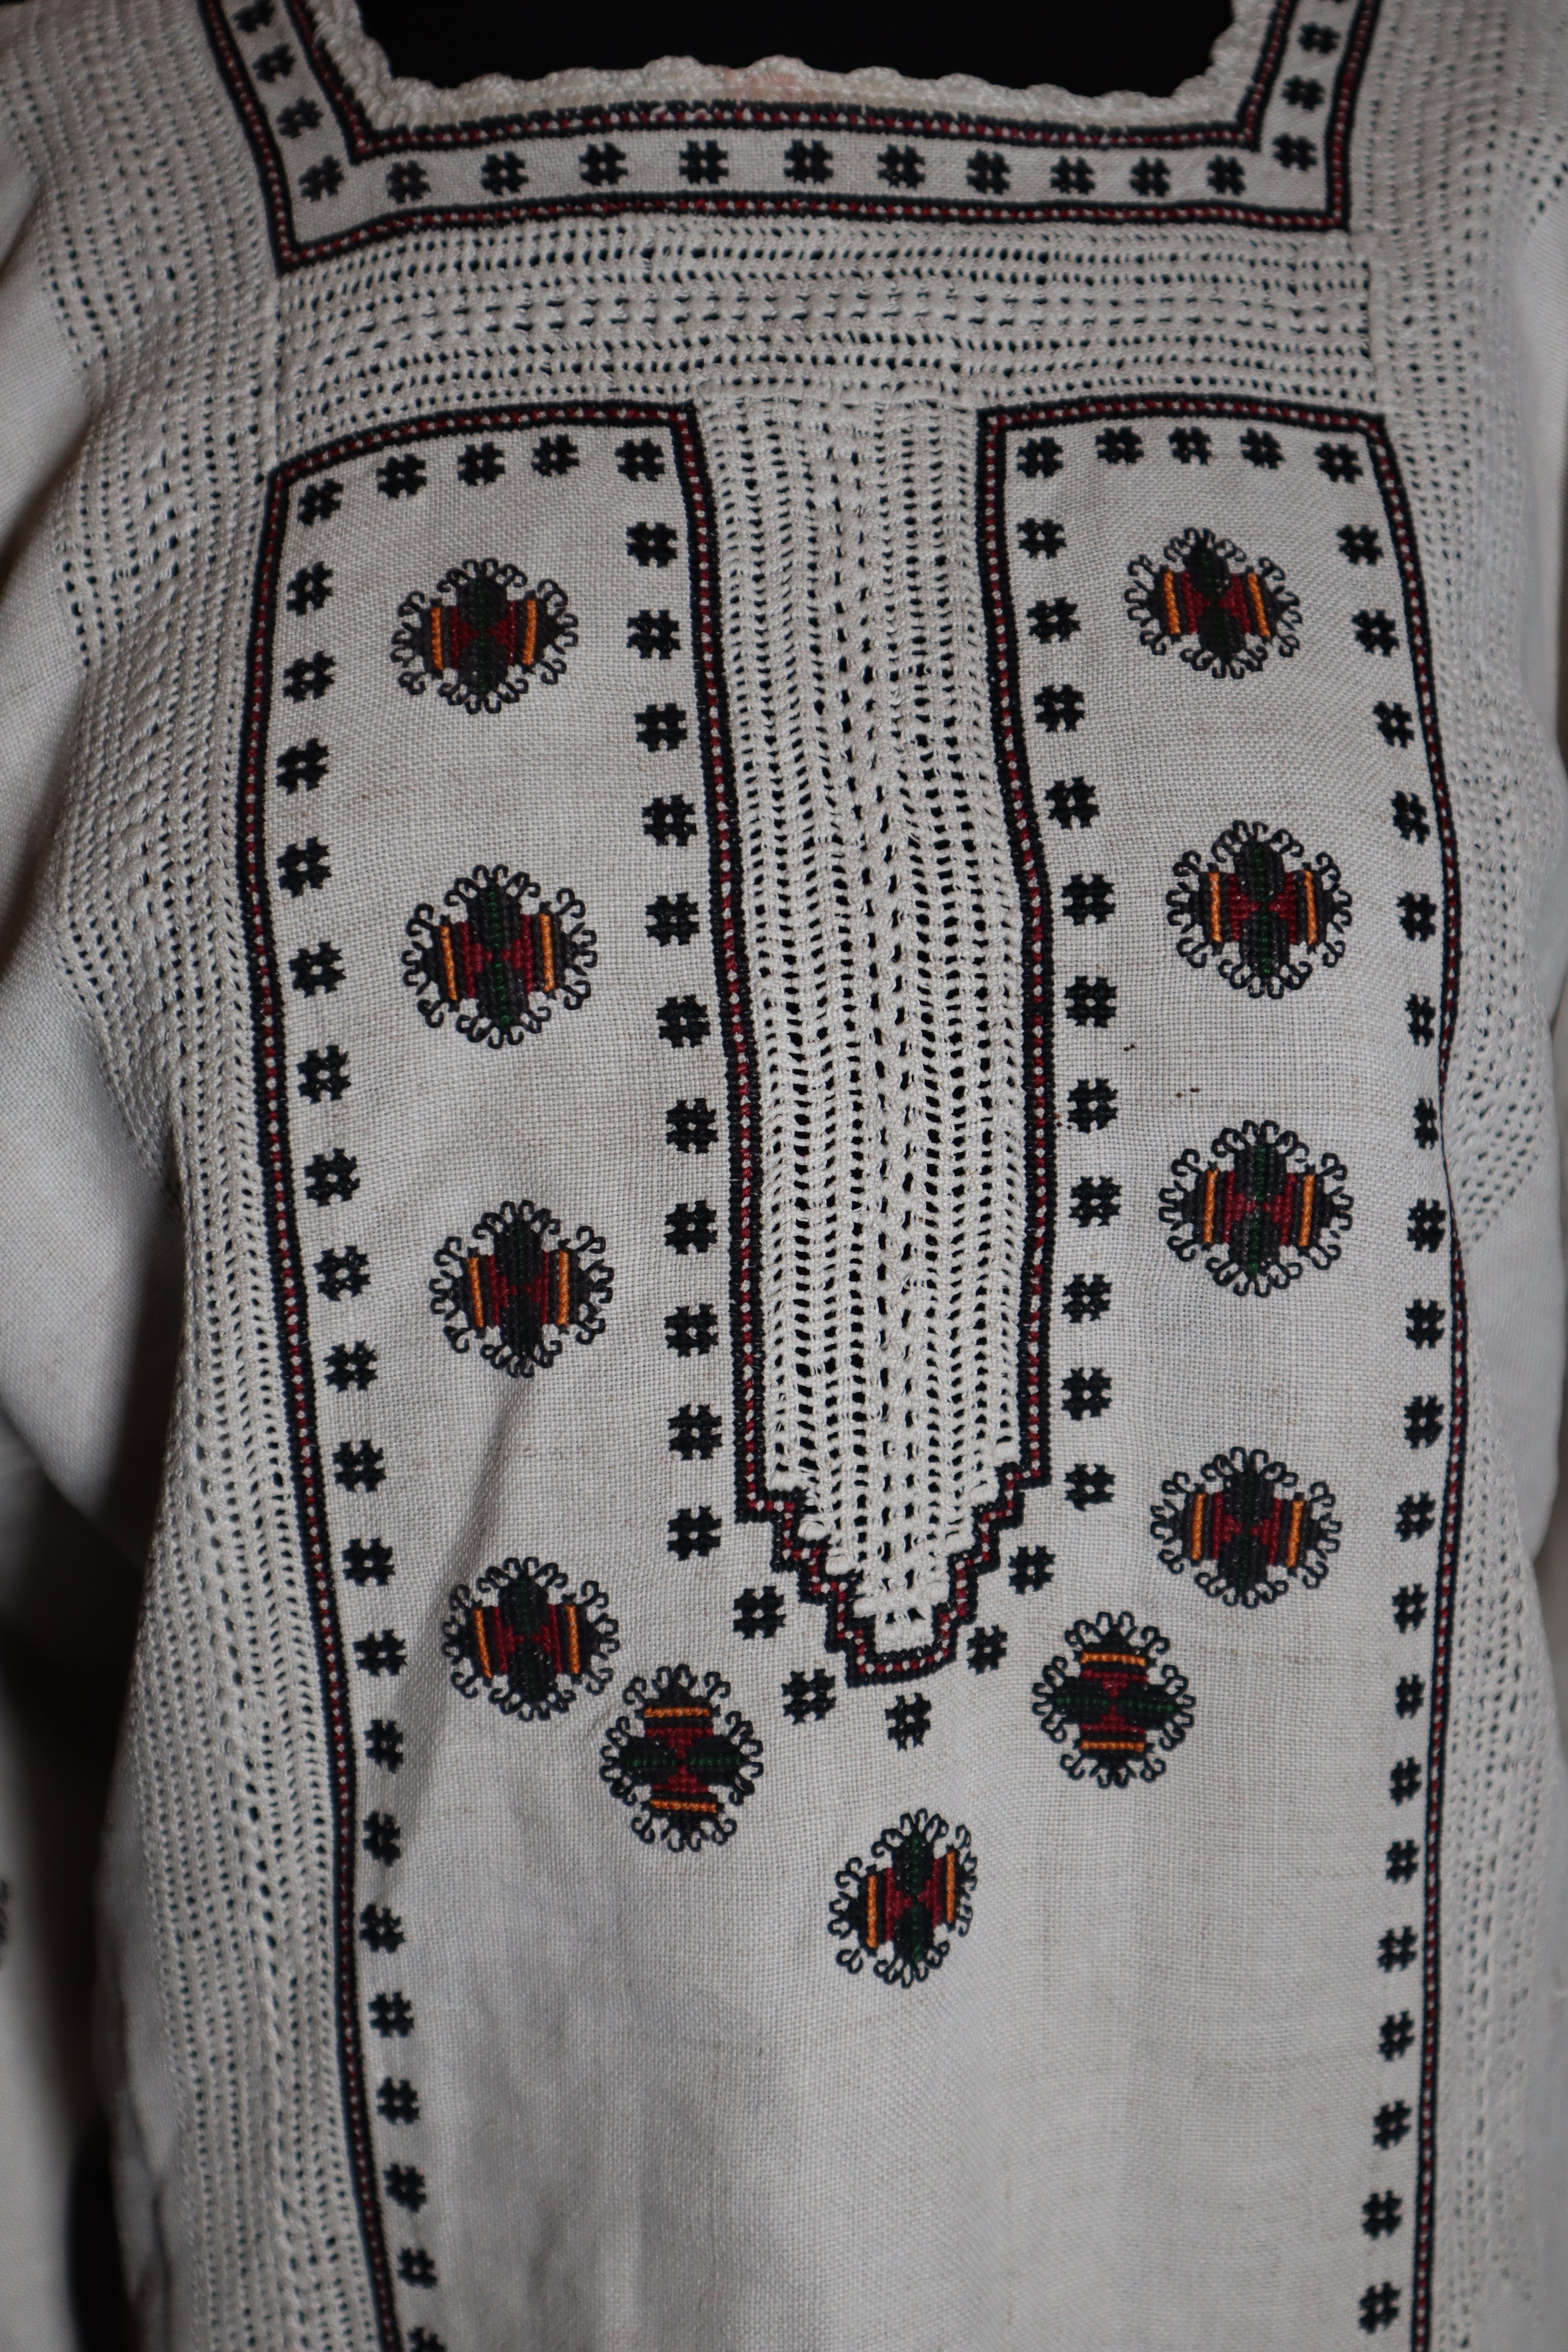 Блуза жіноча, вишита на домотканому полотні. Приблизно середина ХХ ст. (Національний заповідник "Замки Тернопілля" CC BY-NC-SA)